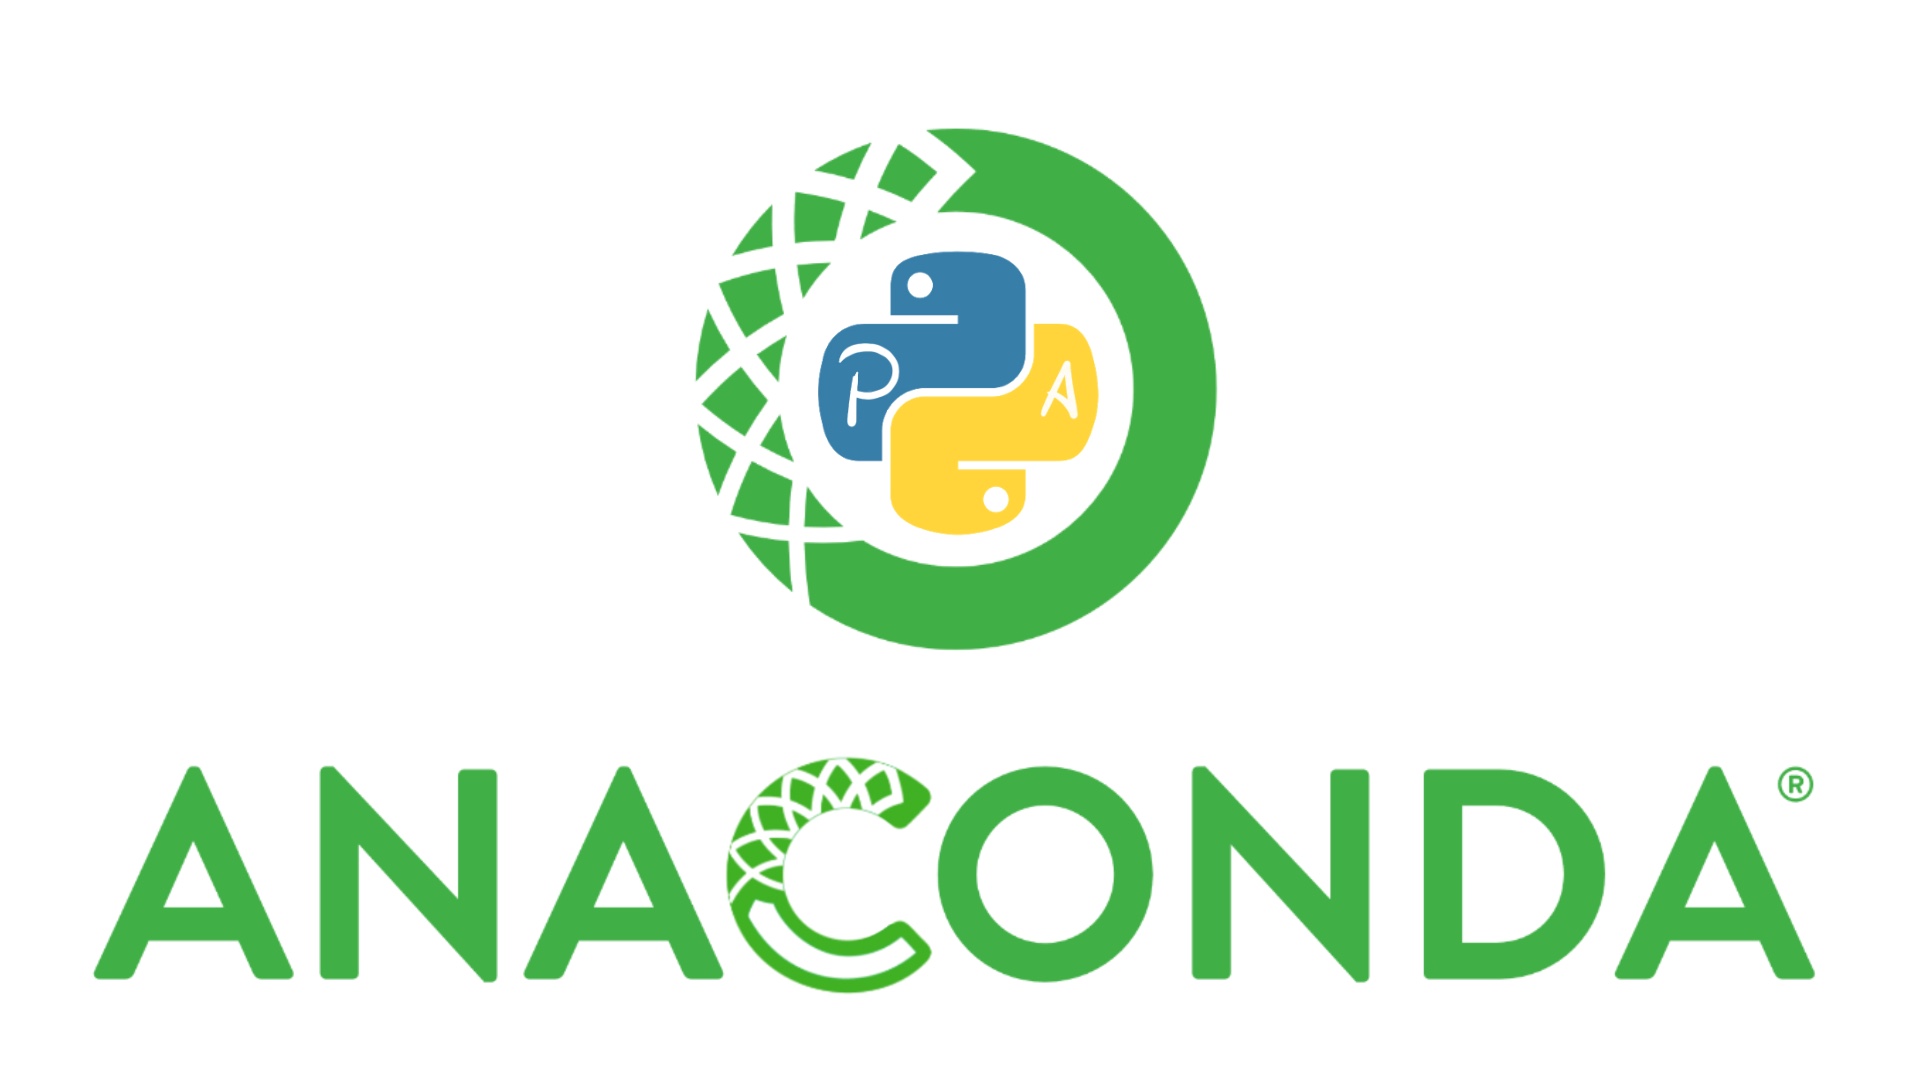 Anaconda Python y Conda - El Pythonista